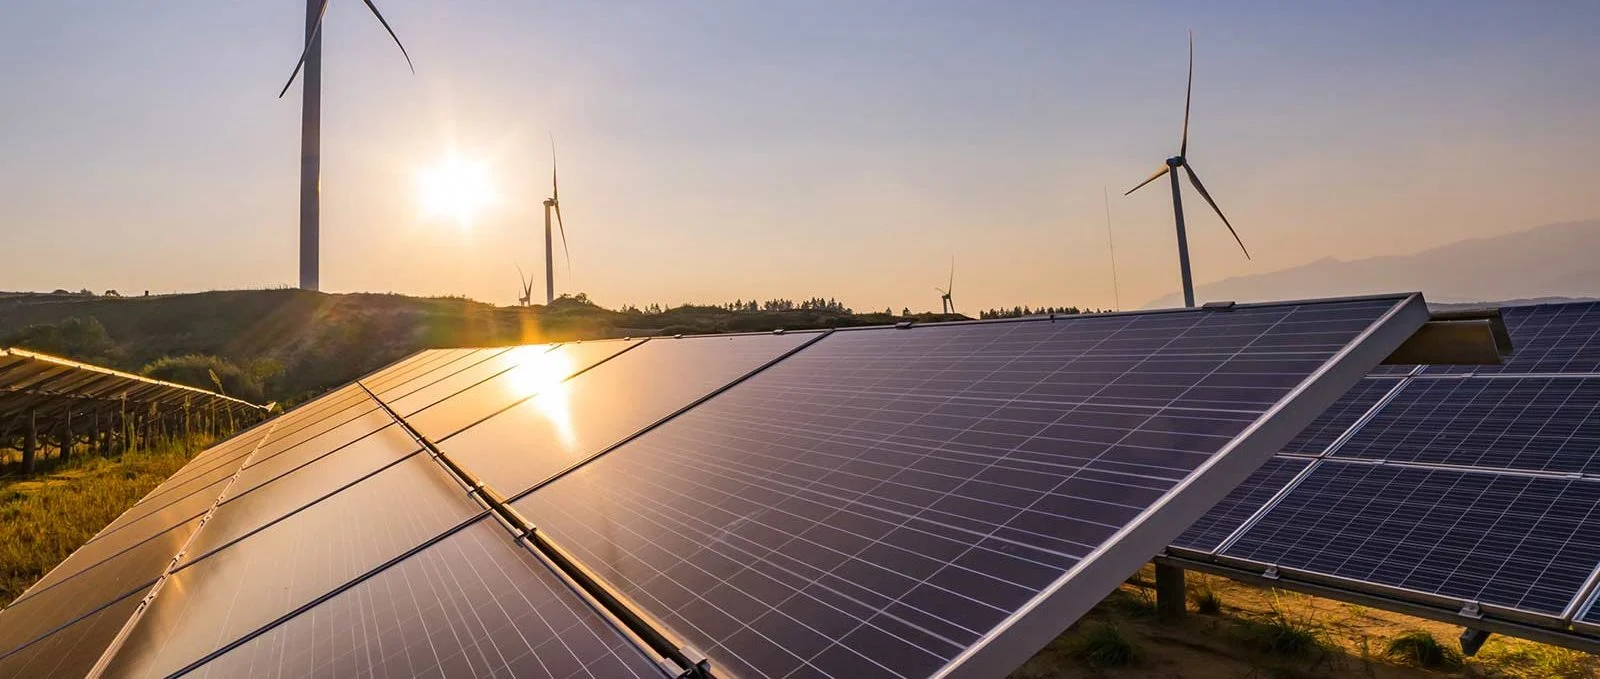 Geração de energia está menos suja desde início da guerra, diz S&P Global. Na imagem, painéis solares e torres eólicas (Foto: Hydro/Divulgação)